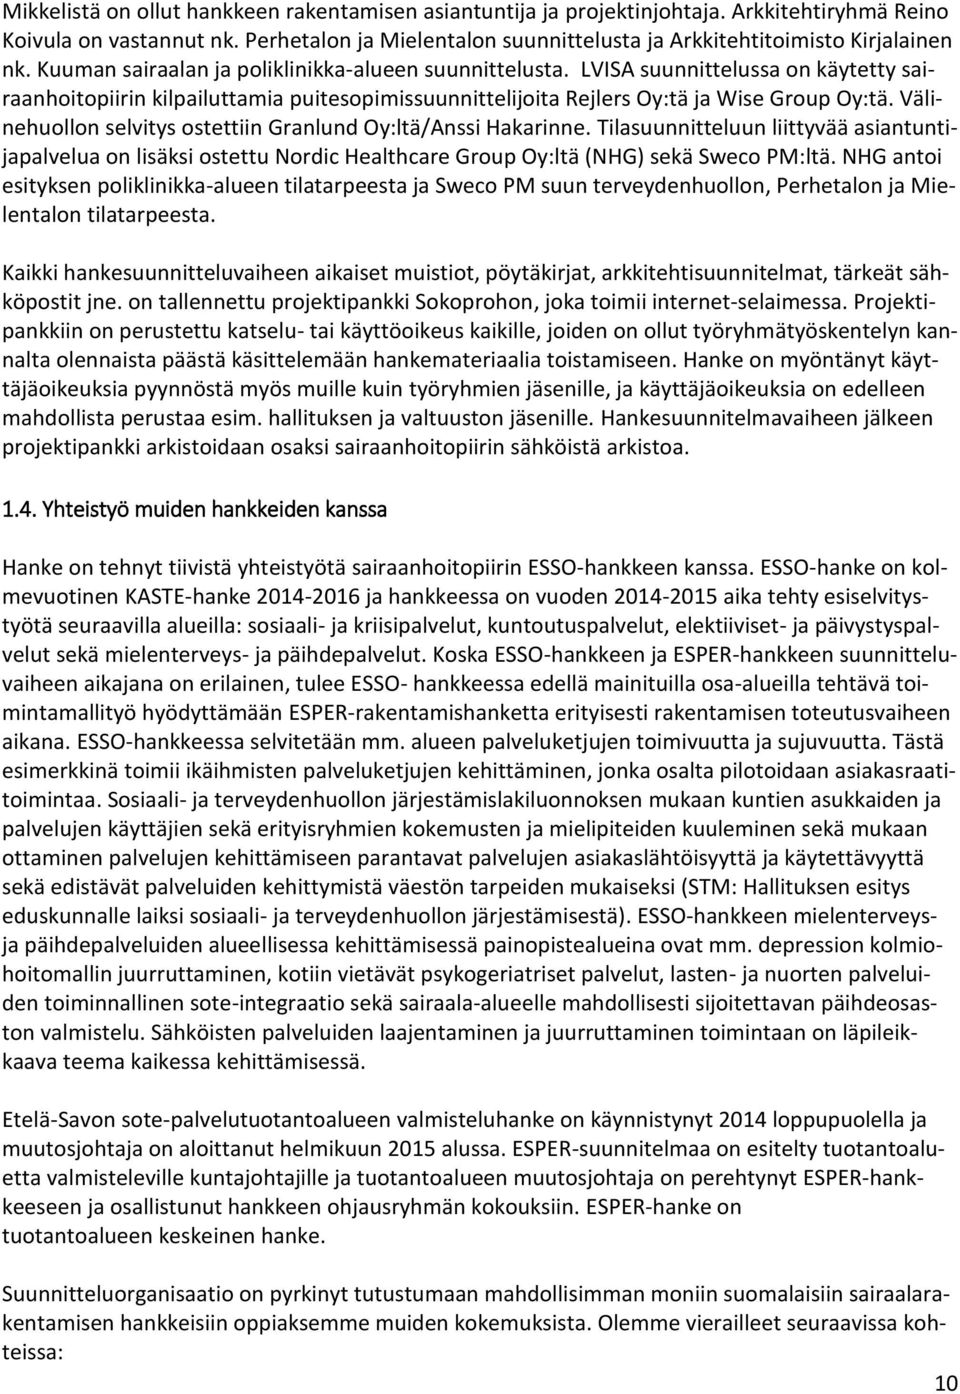 LVISA suunnittelussa on käytetty sairaanhoitopiirin kilpailuttamia puitesopimissuunnittelijoita Rejlers Oy:tä ja Wise Group Oy:tä. Välinehuollon selvitys ostettiin Granlund Oy:ltä/Anssi Hakarinne.